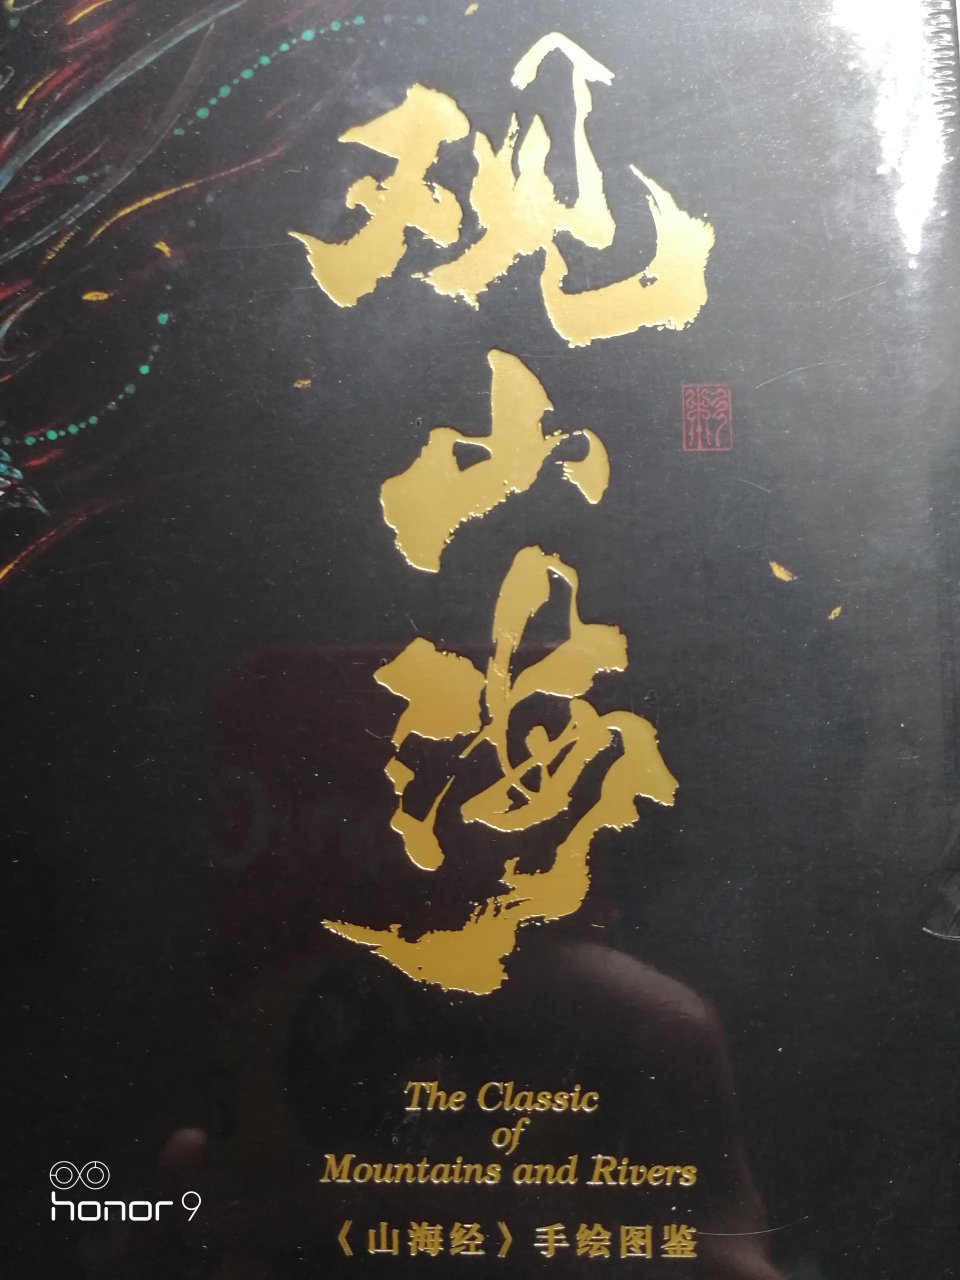 一直都很喜欢山海经，中国几千年传承下来的文化遗产，看到出画册立马拍下，印刷精美，值得珍藏！